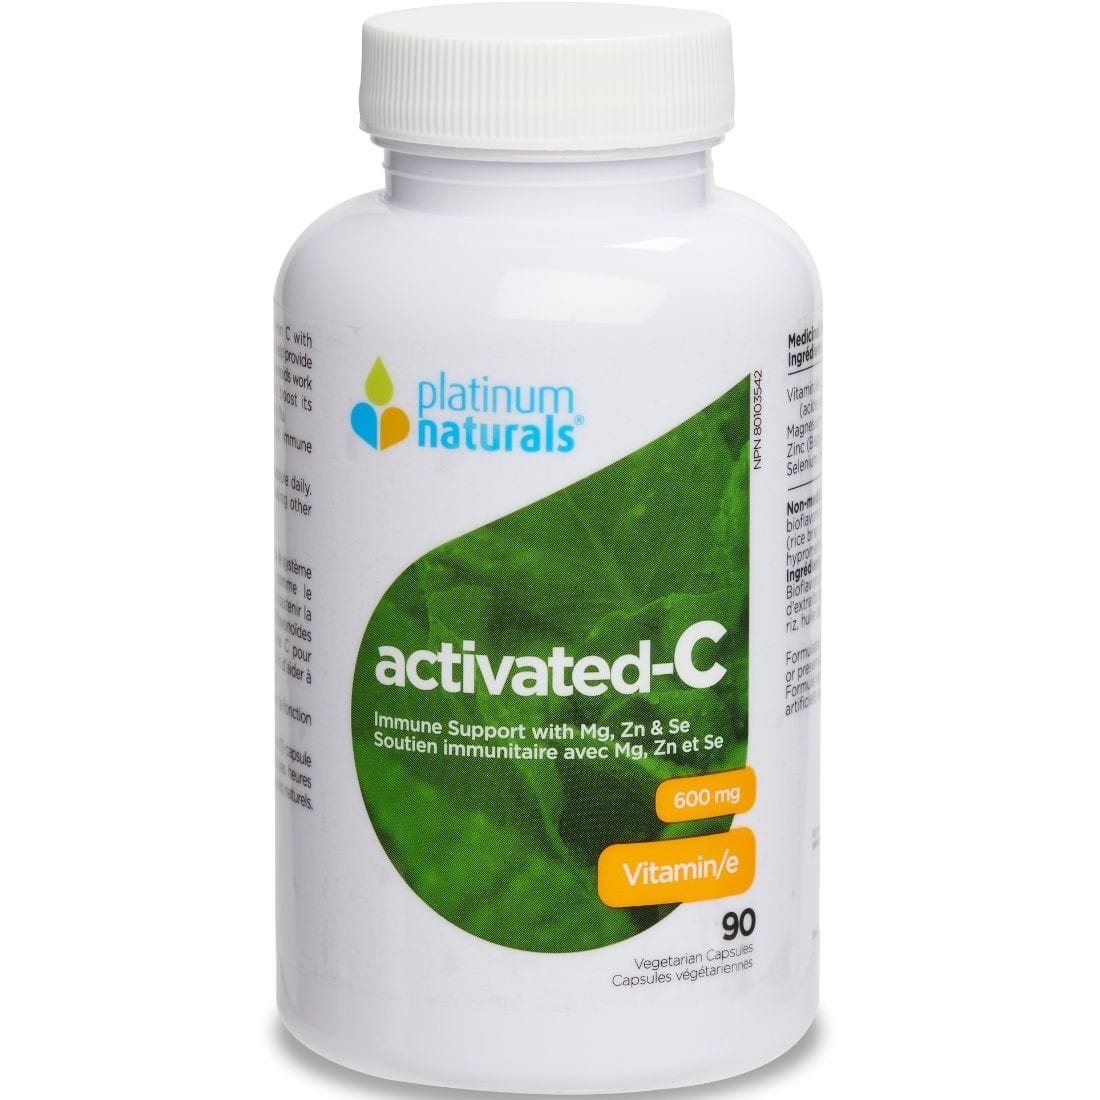 Platinum Naturals Activated-C 600mg Activated Vitamin C Capsules